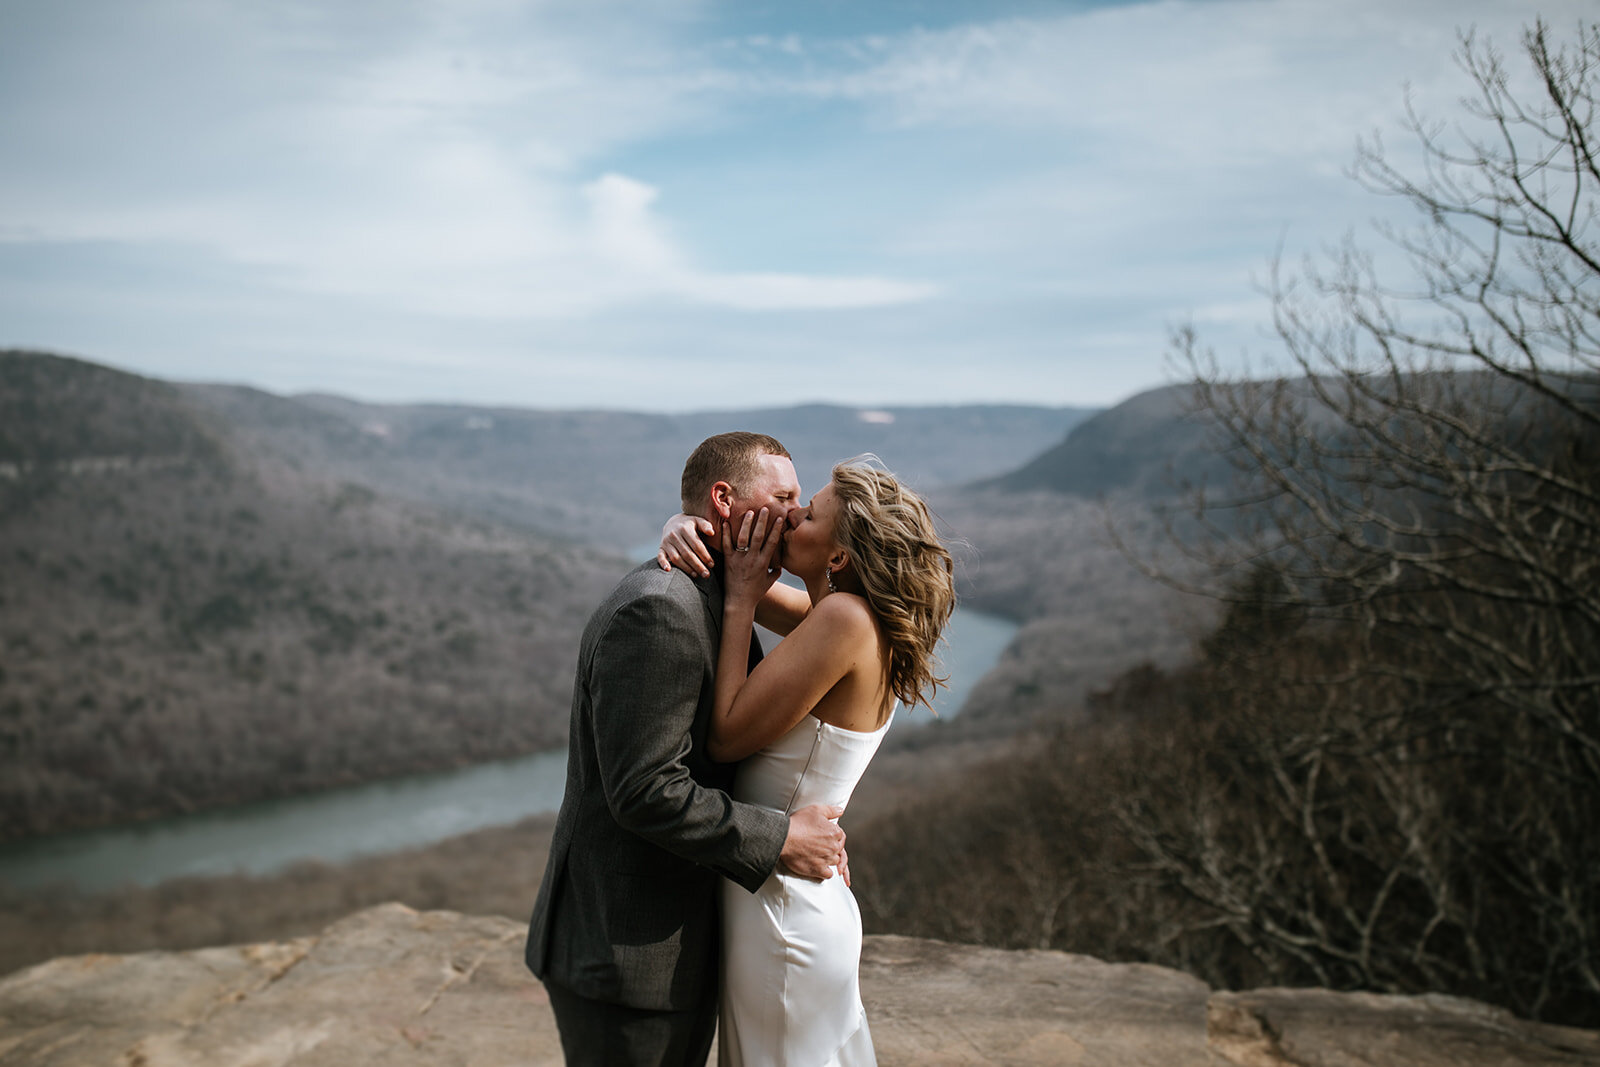 snoopers-rock-adventure-elopement-chattanooga-wedding-photographerfoster-falls-elopement-chattanooga-wedding-photographer-485_websize.jpg